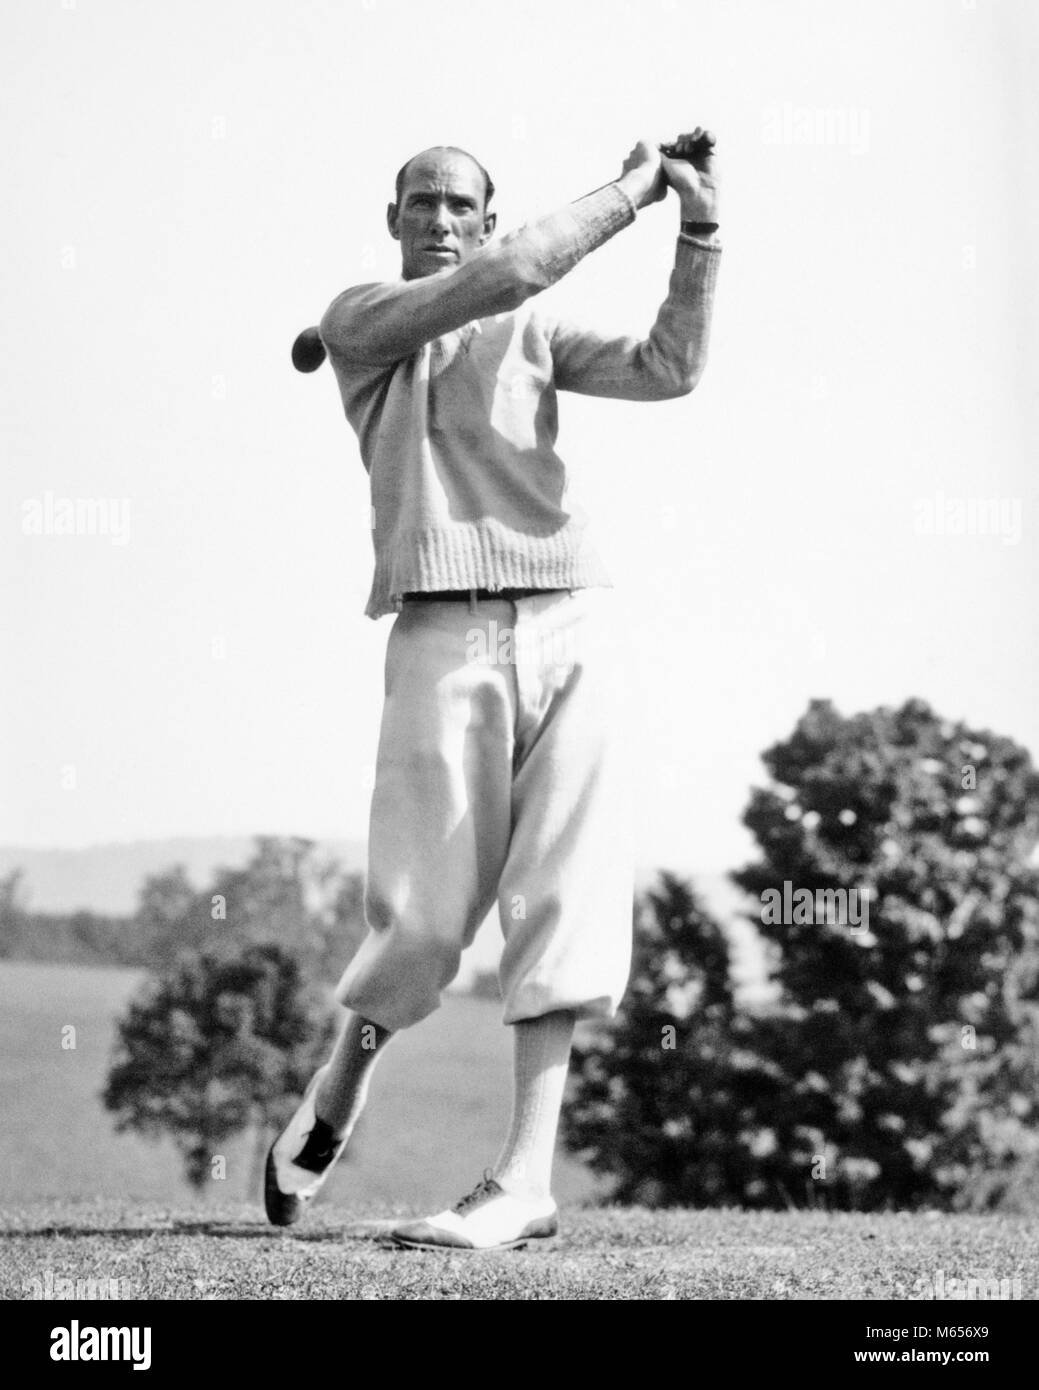 Années 1920 Années 1930 golfeur homme portant des culottes de golf et club PILOTE OSCILLANTE PULL - g3641 HAR001 HARS SANTÉ UNE PERSONNE SEULE COPIE ATHLÉTISME pleine longueur de l'ESPACE DE REMISE EN FORME PHYSIQUE ATHLÉTIQUE GOLF PROFESSION NOSTALGIE 30-35 ans 35-40 ans COURS DE L'ACTIVITÉ OBJECTIFS DE PERTE DE POIDS RENFORCEMENT PHYSIQUE OCCUPATION LOISIRS PASSE-TEMPS PANTALON STYLES SOI LOISIRS CARRIÈRES EN SANTÉ MENTALE OSCILLANTE FASHIONS PERFECTIONNE ATHLÈTES MUSCLES SOUPLESSE AMÉLIORER CARDIOVASCULAIRES CLUBS DEUX-TONS MI-hommes mi-homme adulte ADULTES CHAUSSURES SPECTATEUR AMATEUR DEUX TONS B&W NOIR ET BLANC DE L'origine ethnique caucasienne culottes Banque D'Images